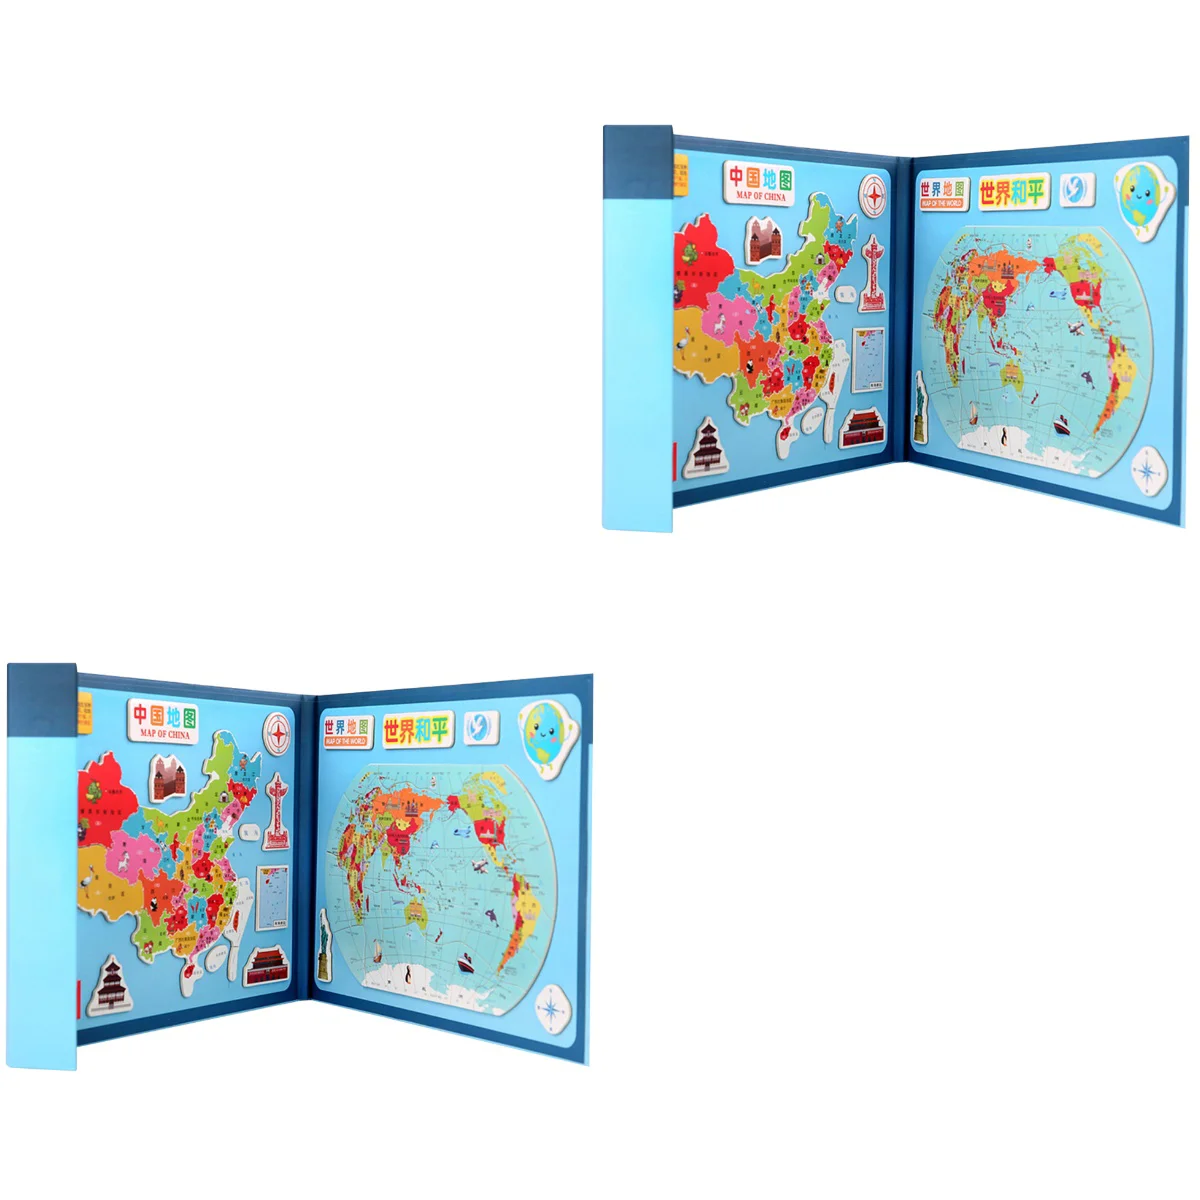 

146 шт. в одном наборе, магнитная деревянная головоломка, Карта мира, развивающая игра, китайская карта, игра для детей